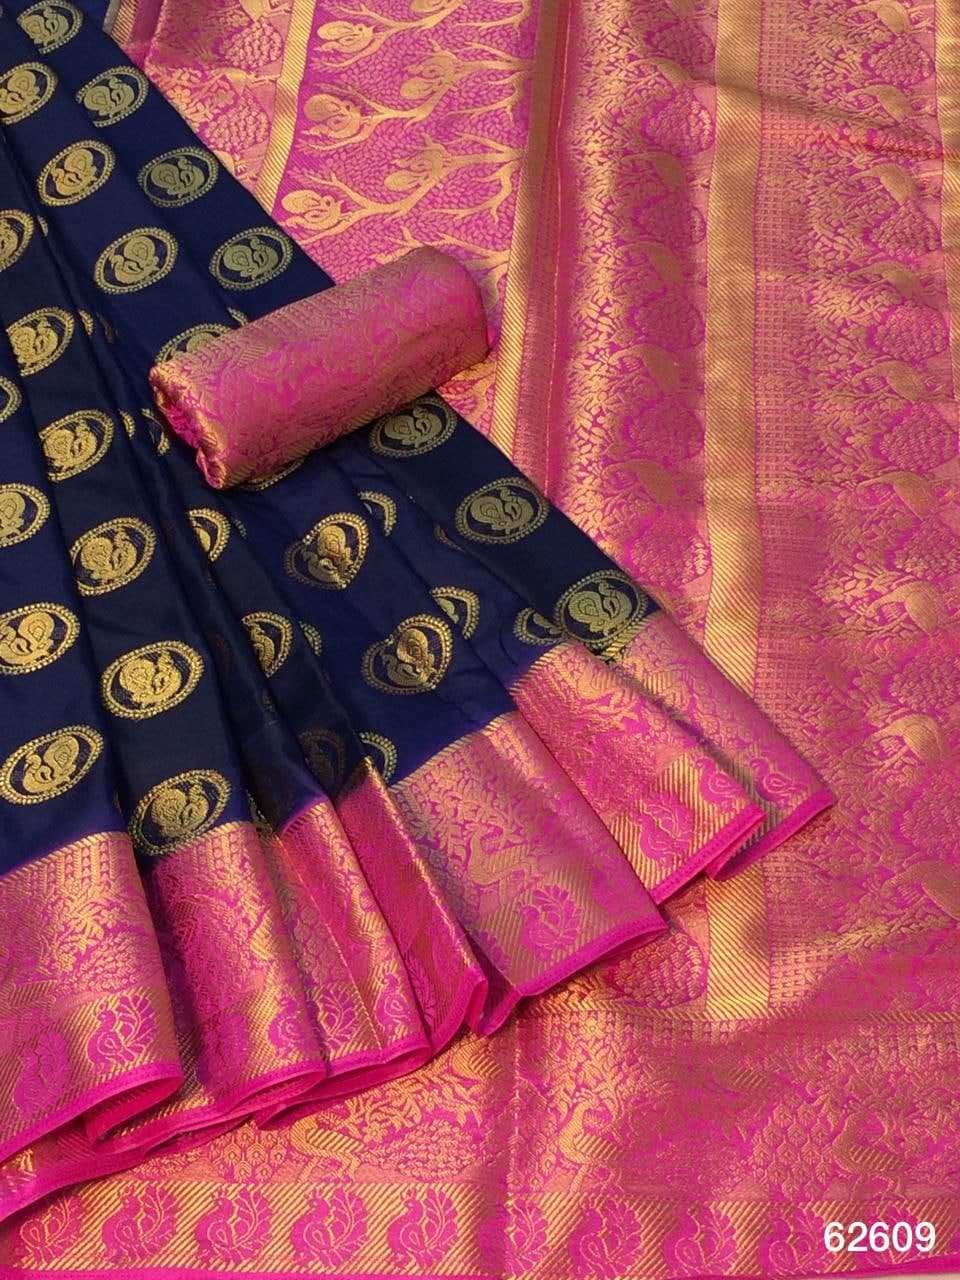 Classic Rani Pink Color Nylon Silk Design Grand Pallu Brocade Border Saree Blouse